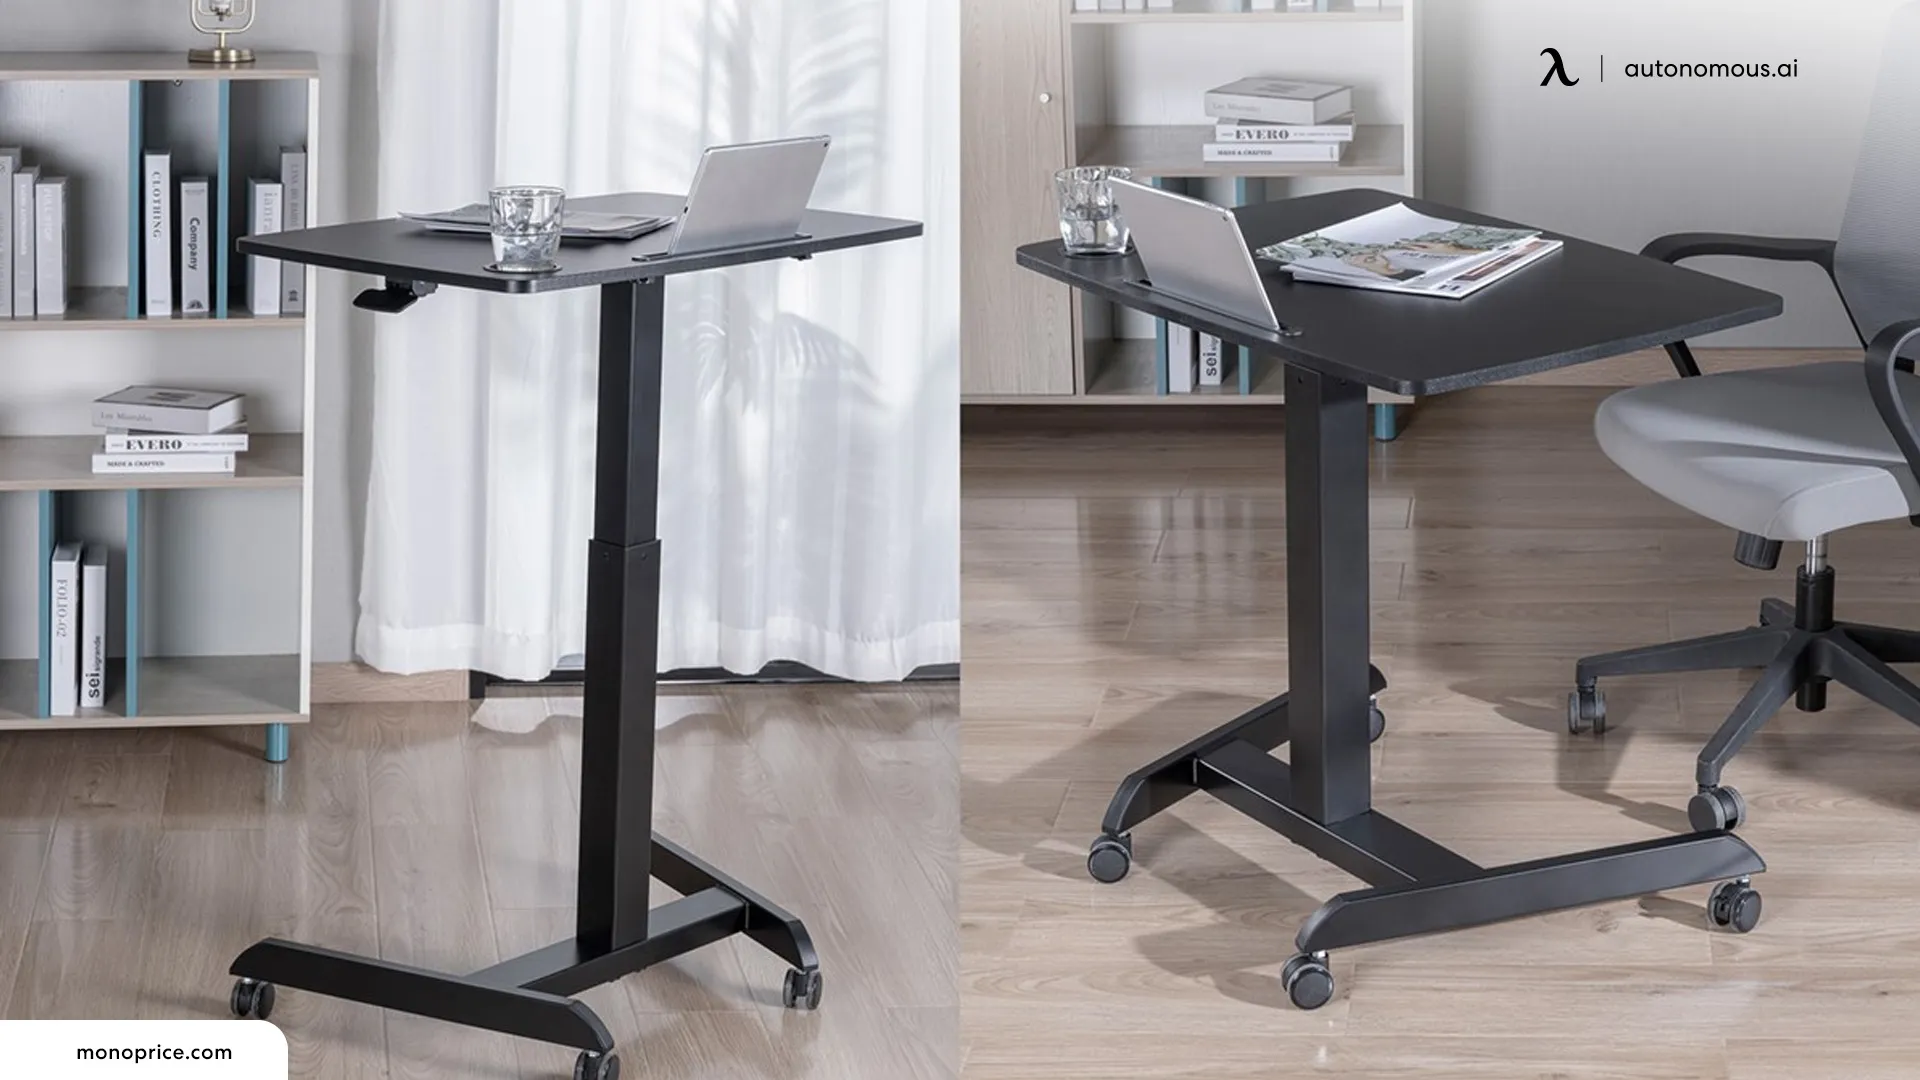 Advantages of Adjustable Rolling Desks